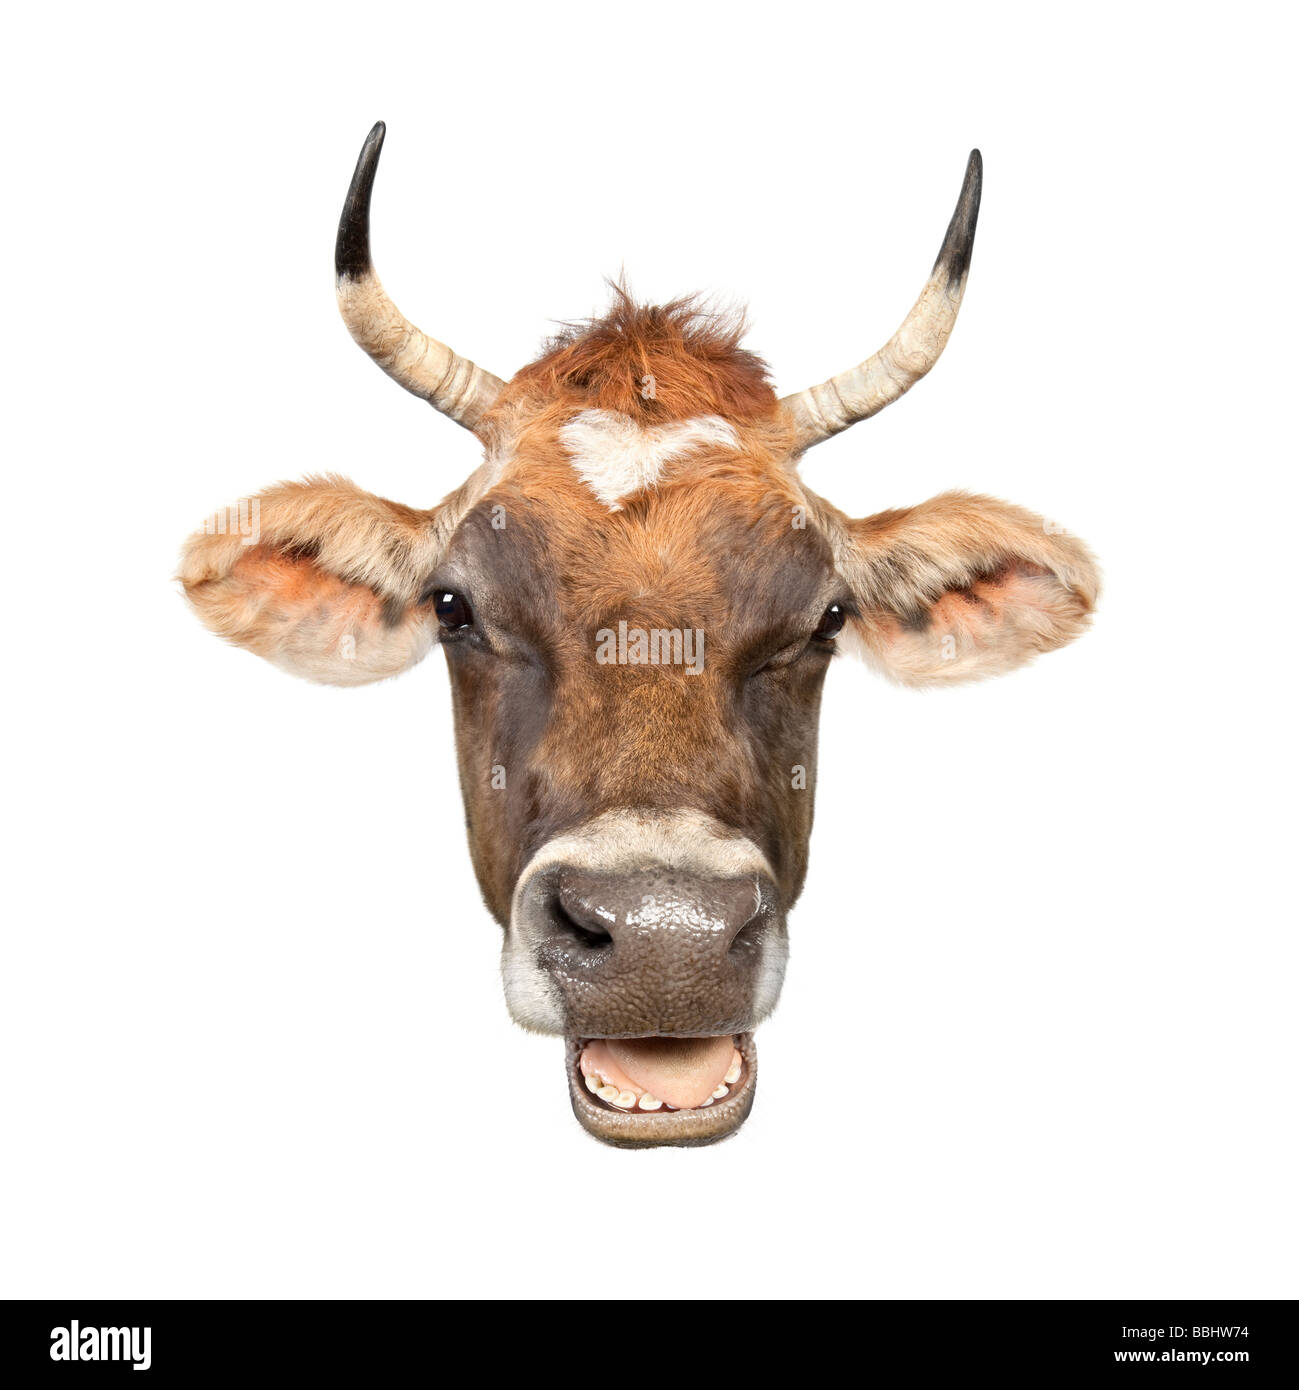 Hautnah auf dem Kopf eines braunen Jersey Kuh 10 Jahre alt, vor einem weißen Hintergrund Stockfoto